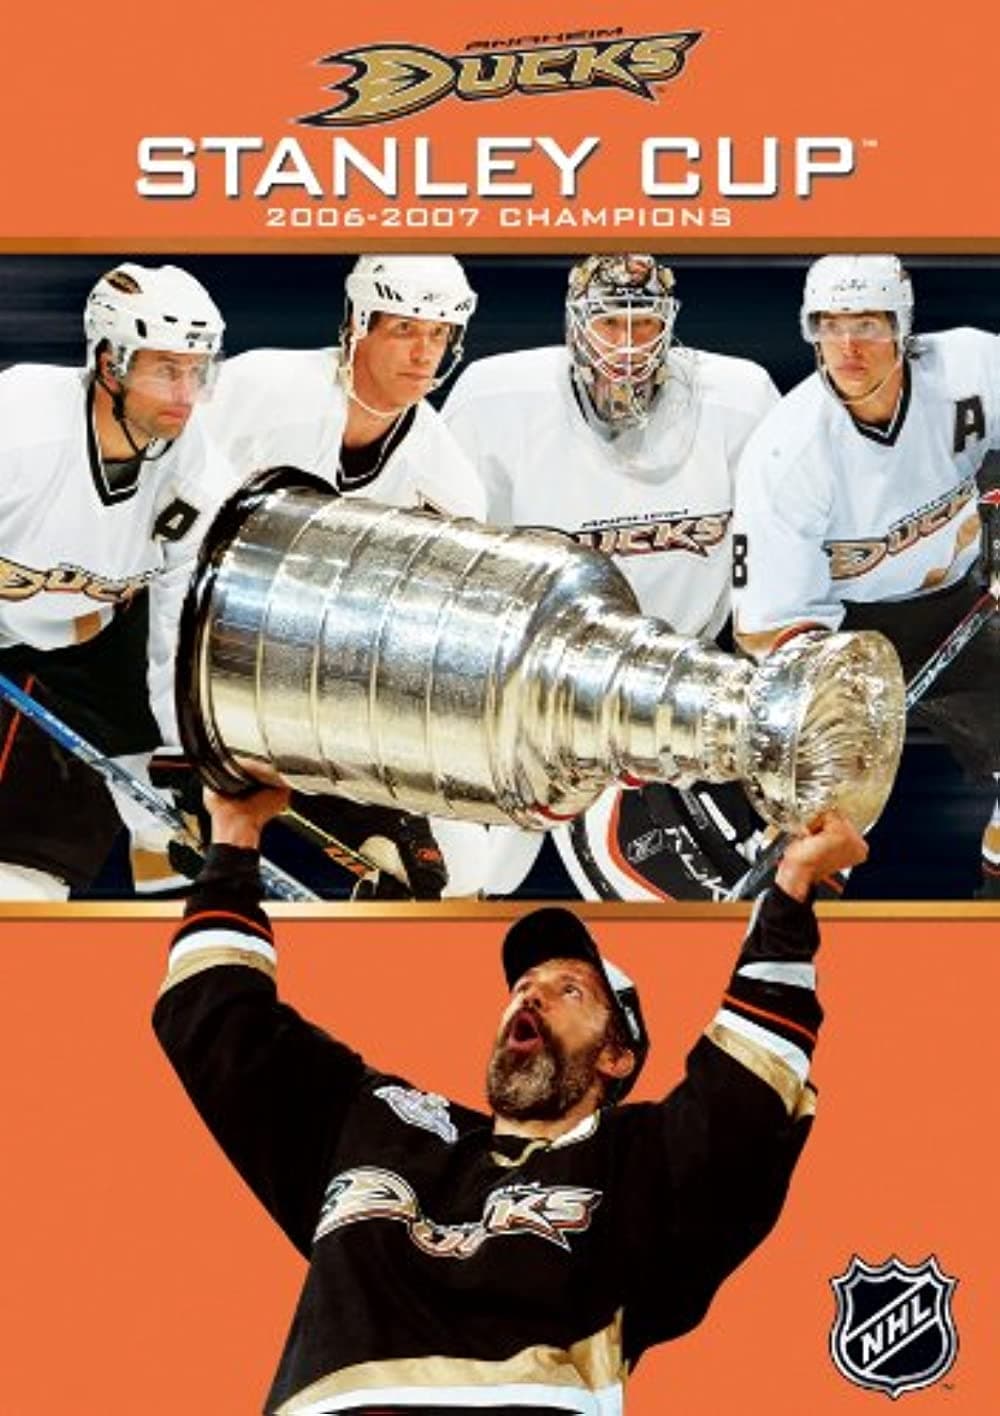 Anaheim Ducks: NHL Stanley Cup Champions - 2007